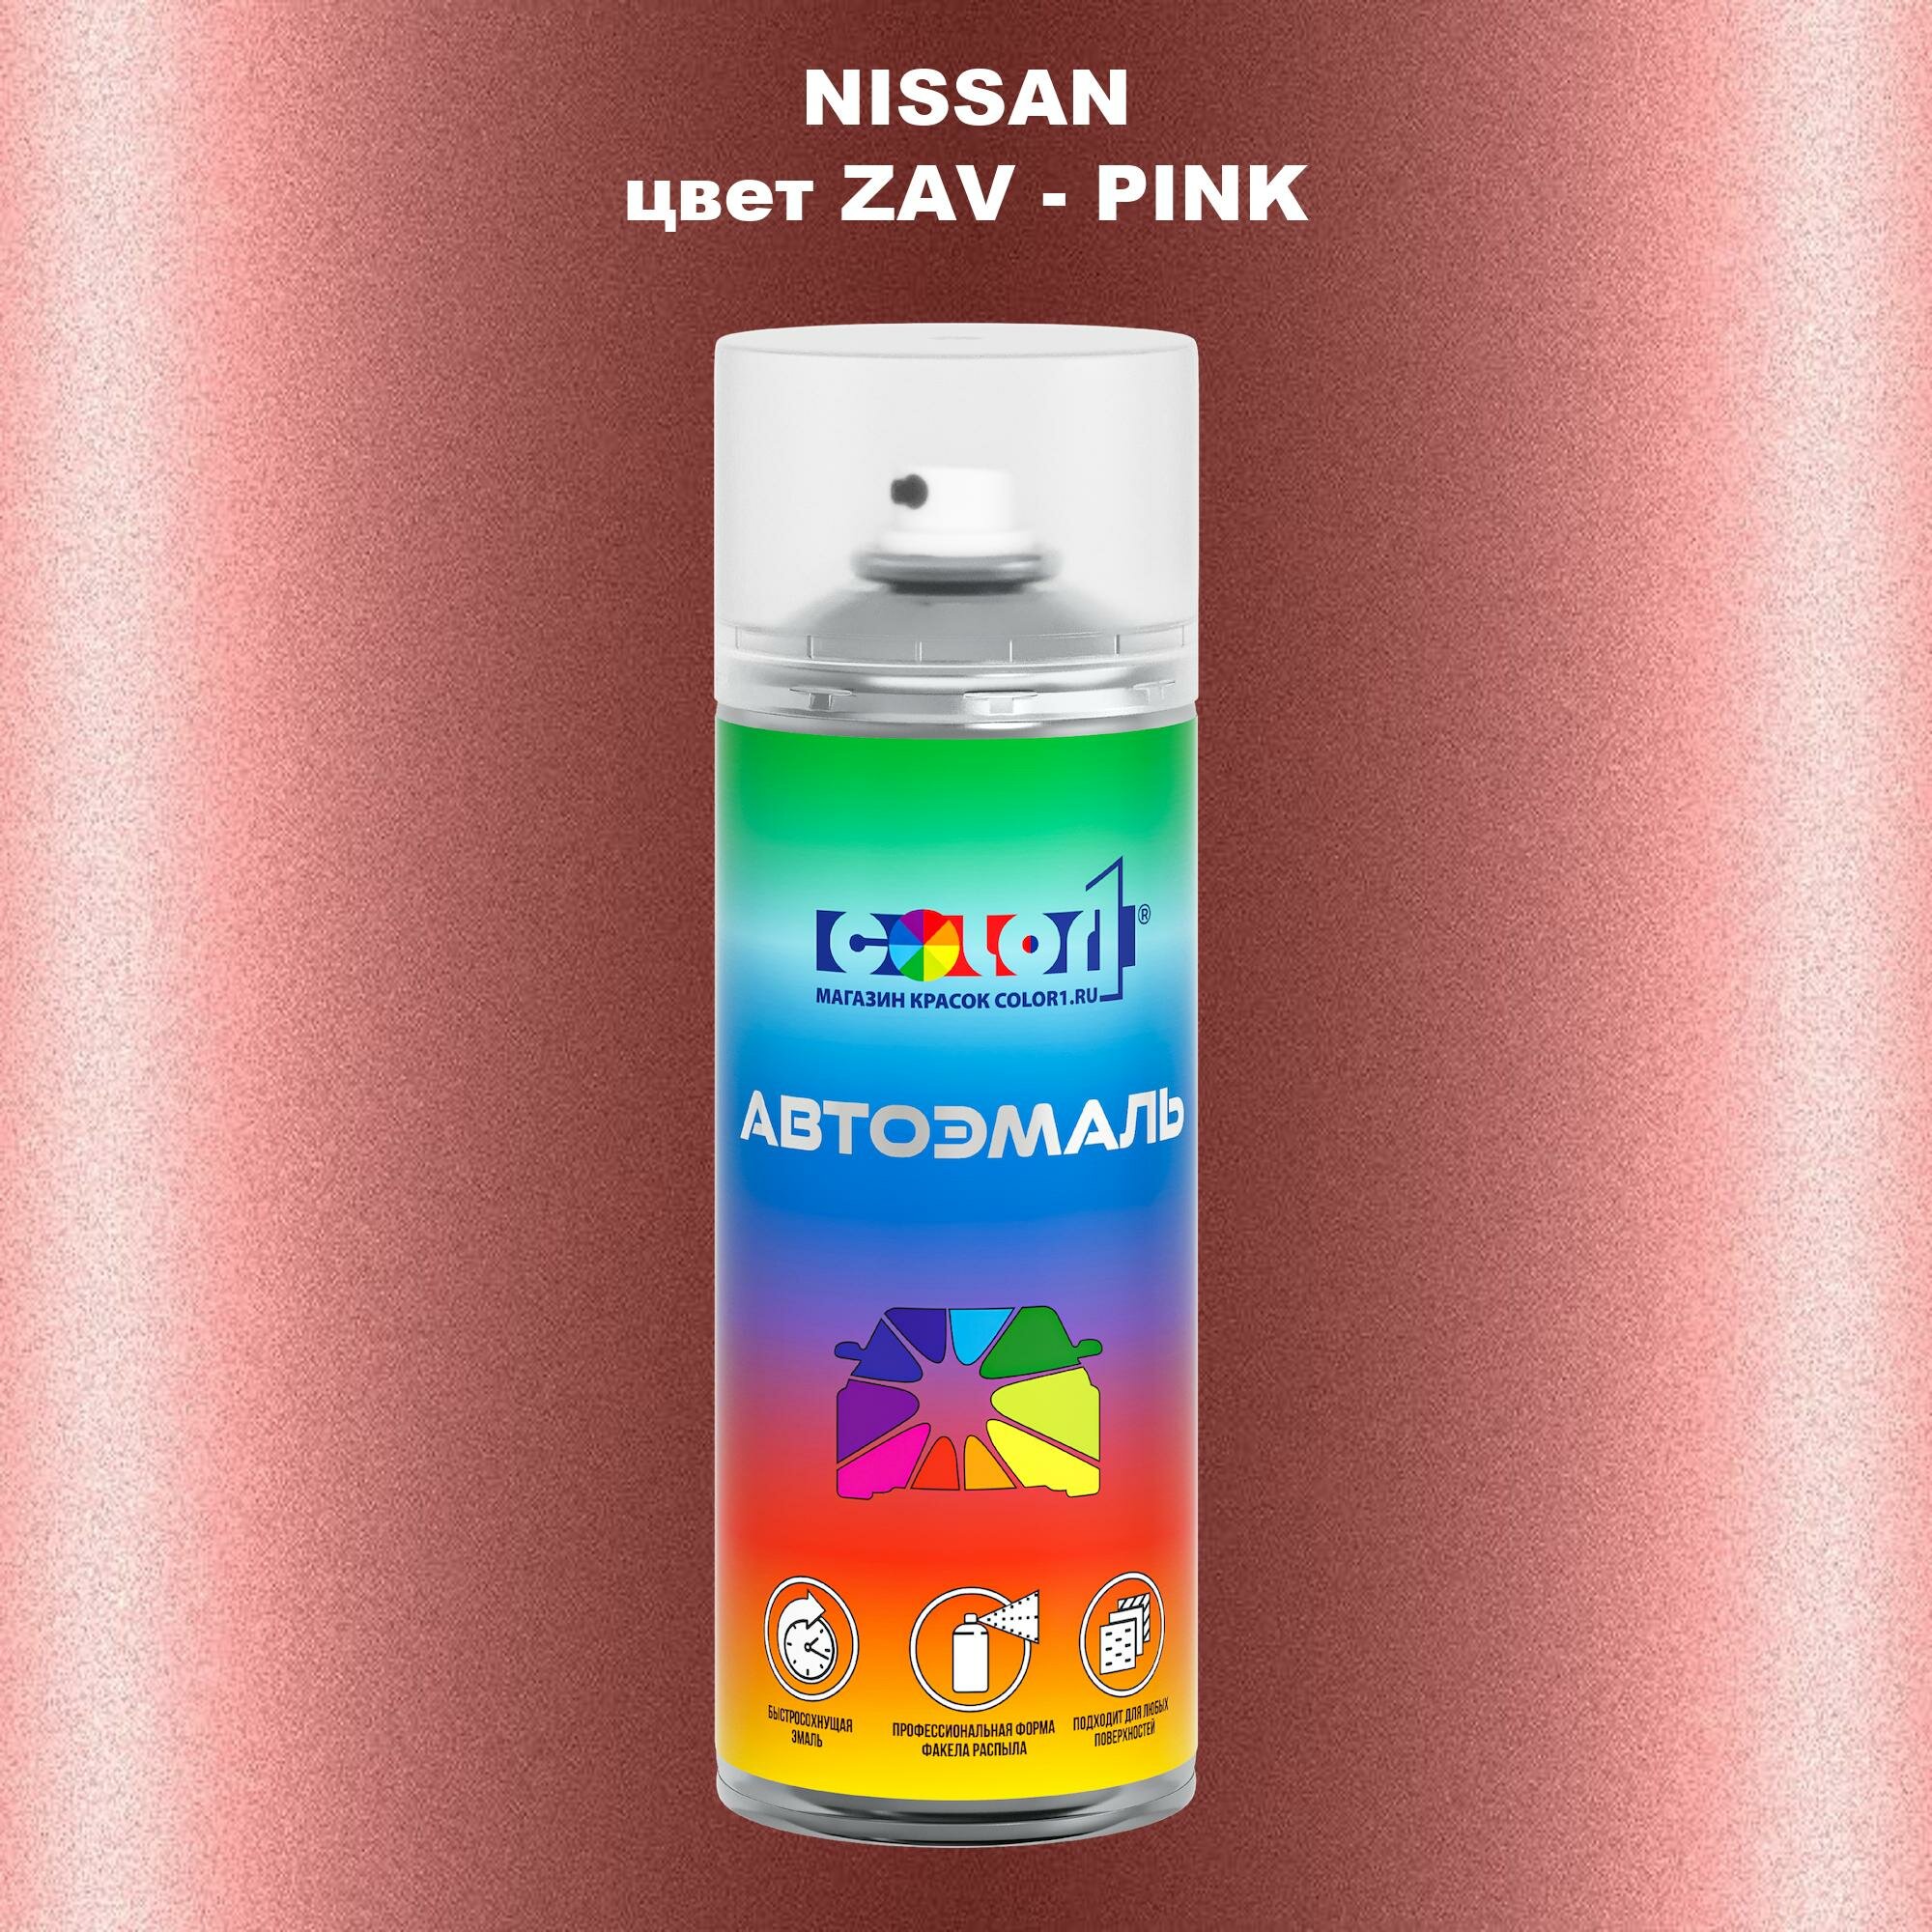 Аэрозольная краска COLOR1 для NISSAN, цвет ZAV - PINK